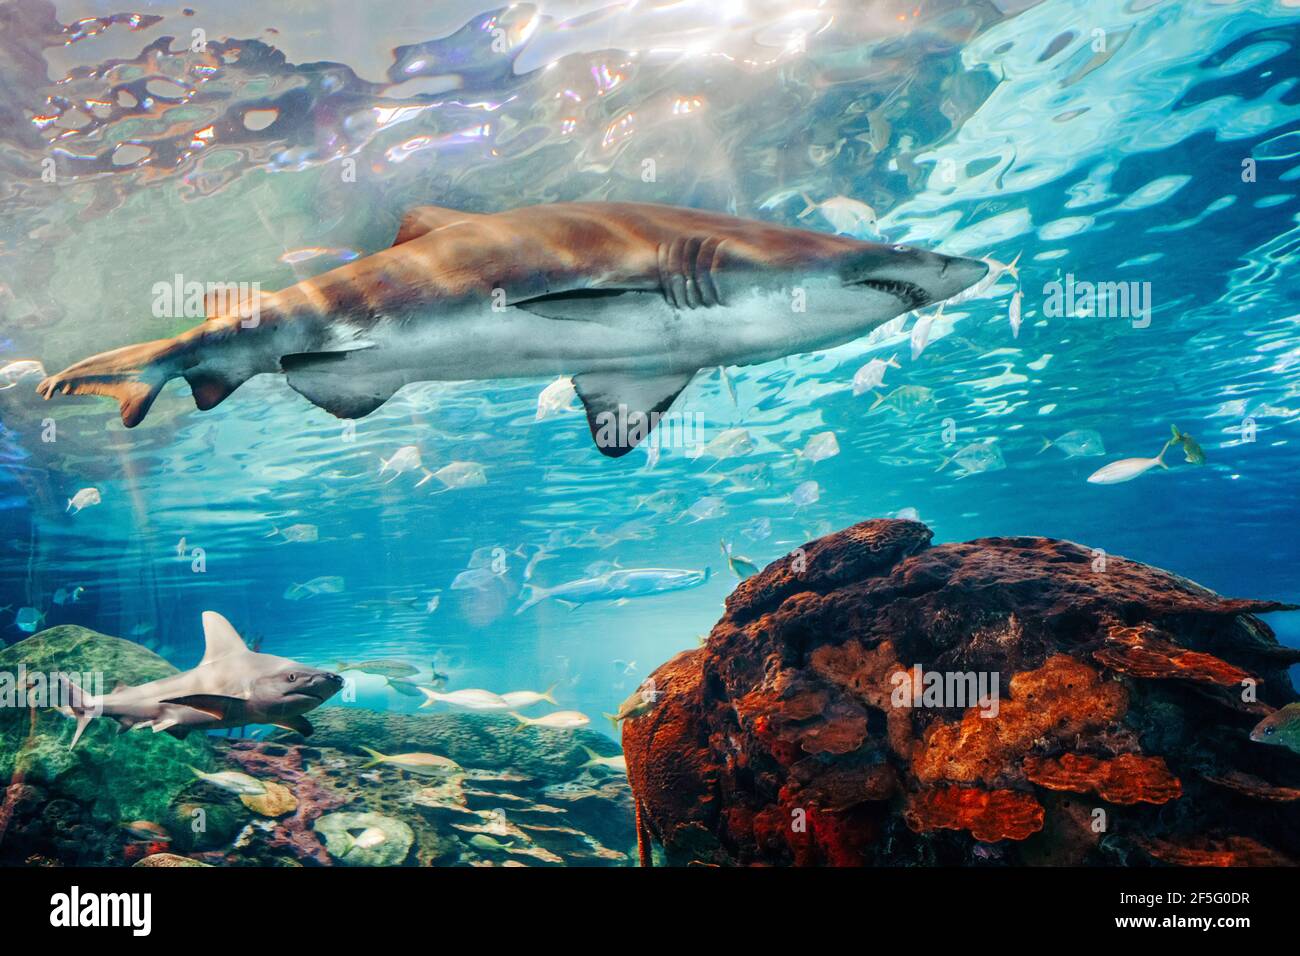 Riesige beängstigende Haie unter Wasser im Aquarium. Meer Meer marine Tierwelt Raubtiere gefährliche Tiere schwimmen in blauem Wasser. Unterwasserwelt. Wasser n Stockfoto